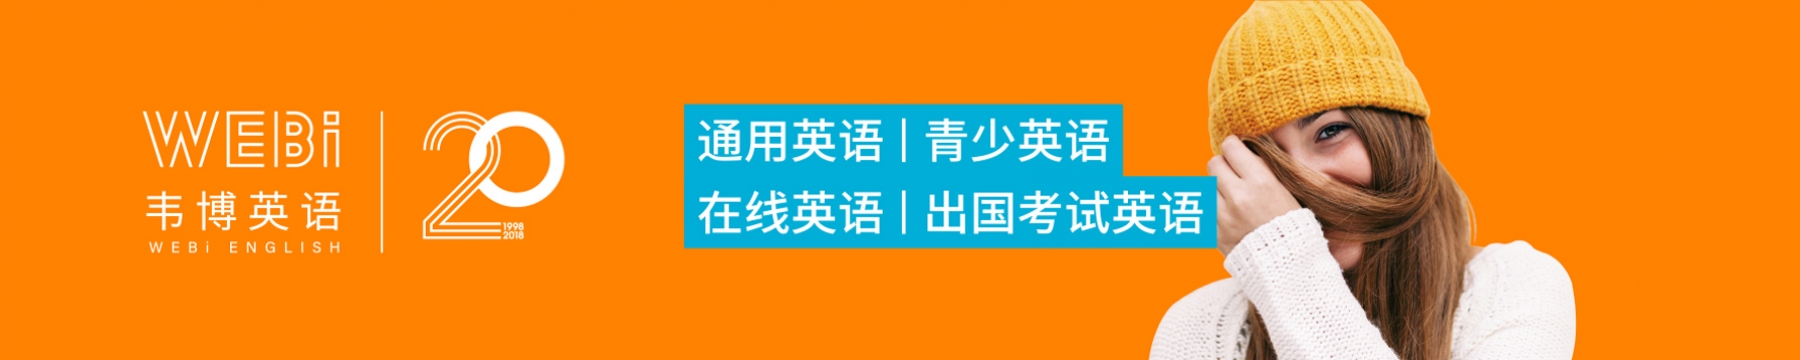 广州市天河区韦博语言培训中心